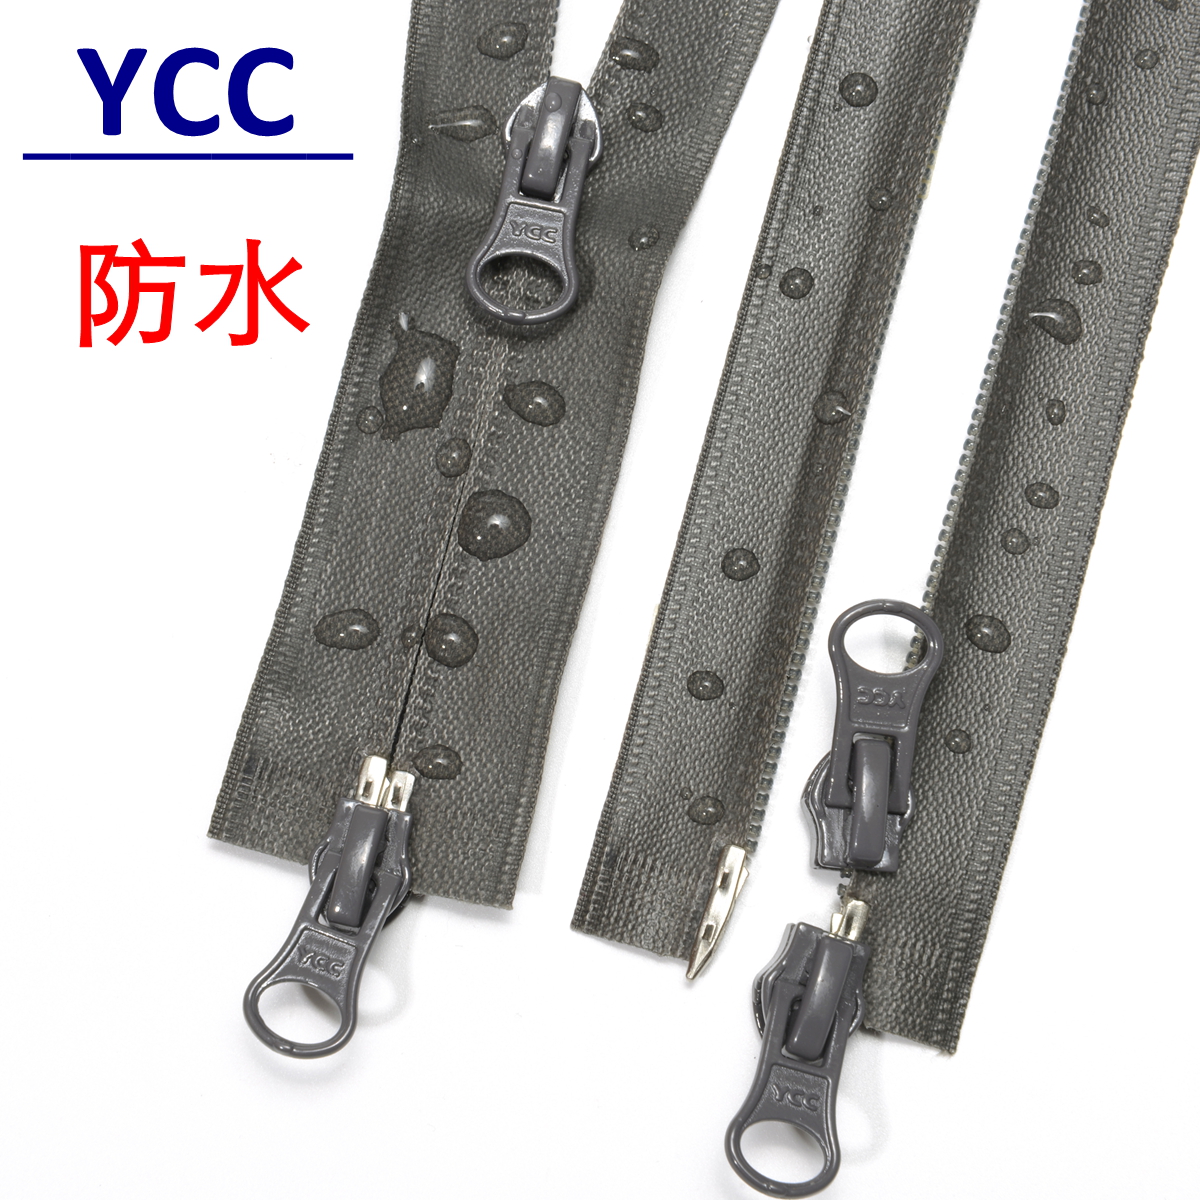 YCC尼龙防水拉链5号 开尾双开口 自动锁双拉头葫芦片 夹克羽绒服